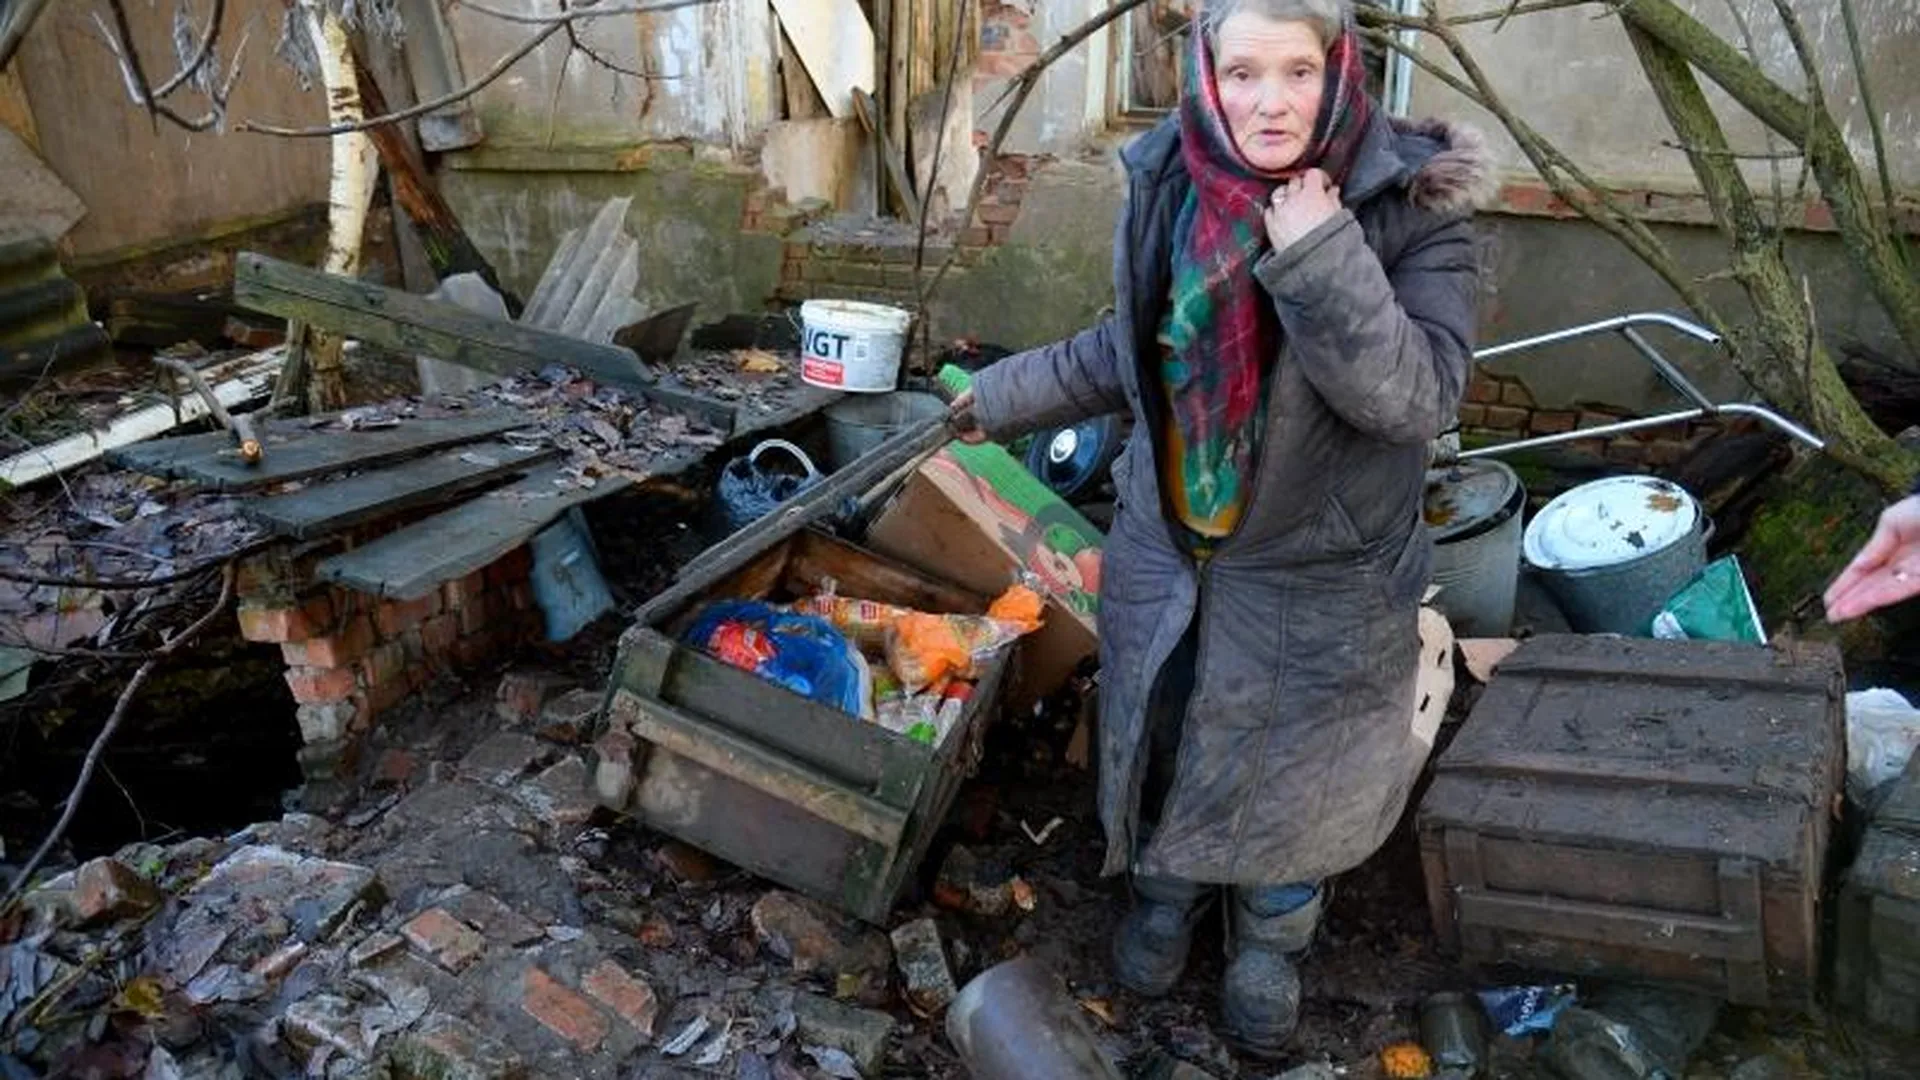 Четверть века на свалке: бездомной семье помогут власти Сергиева Посада